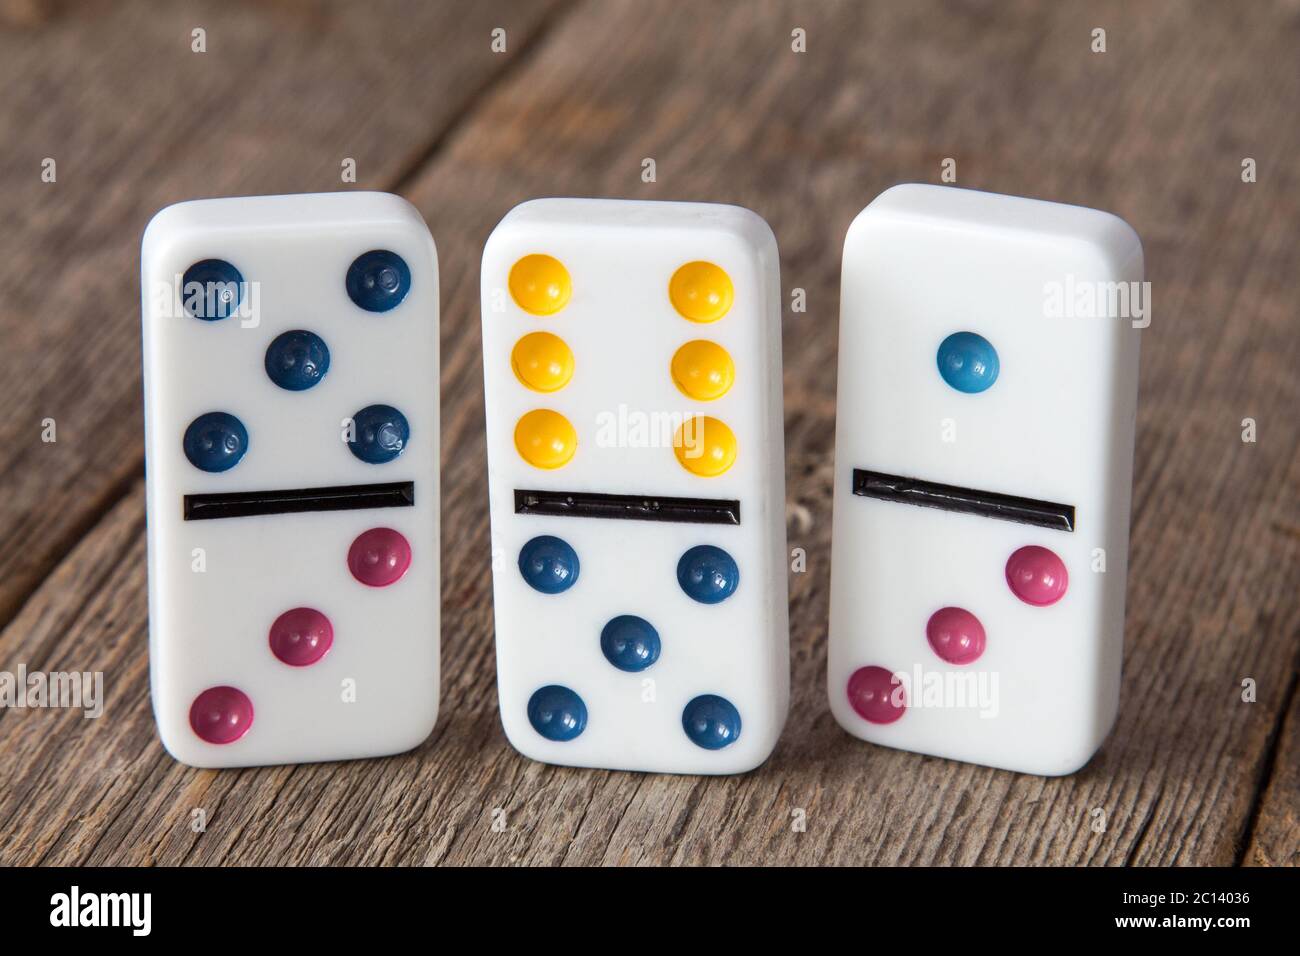 Drei Dominosteine mit bunten Punkten Stockfotografie - Alamy